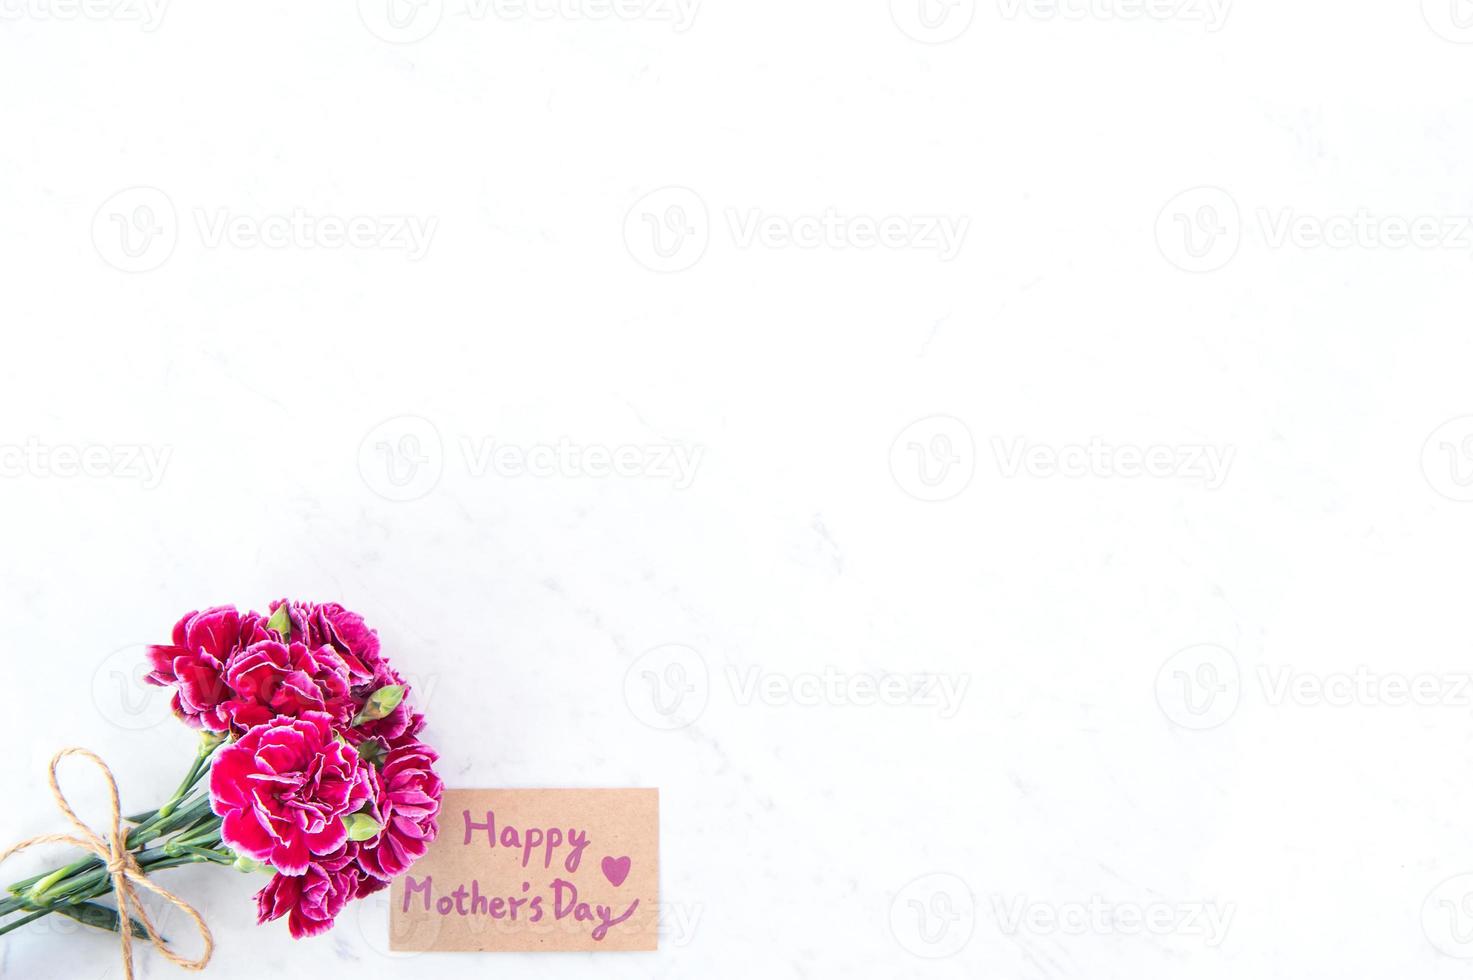 maj mors dag idékonceptfotografering - vackra blommande nejlikor bundna av rosett med krafttextkort isolerat på ljust modernt bord, kopieringsutrymme, platt liggande, ovanifrån, mock up foto